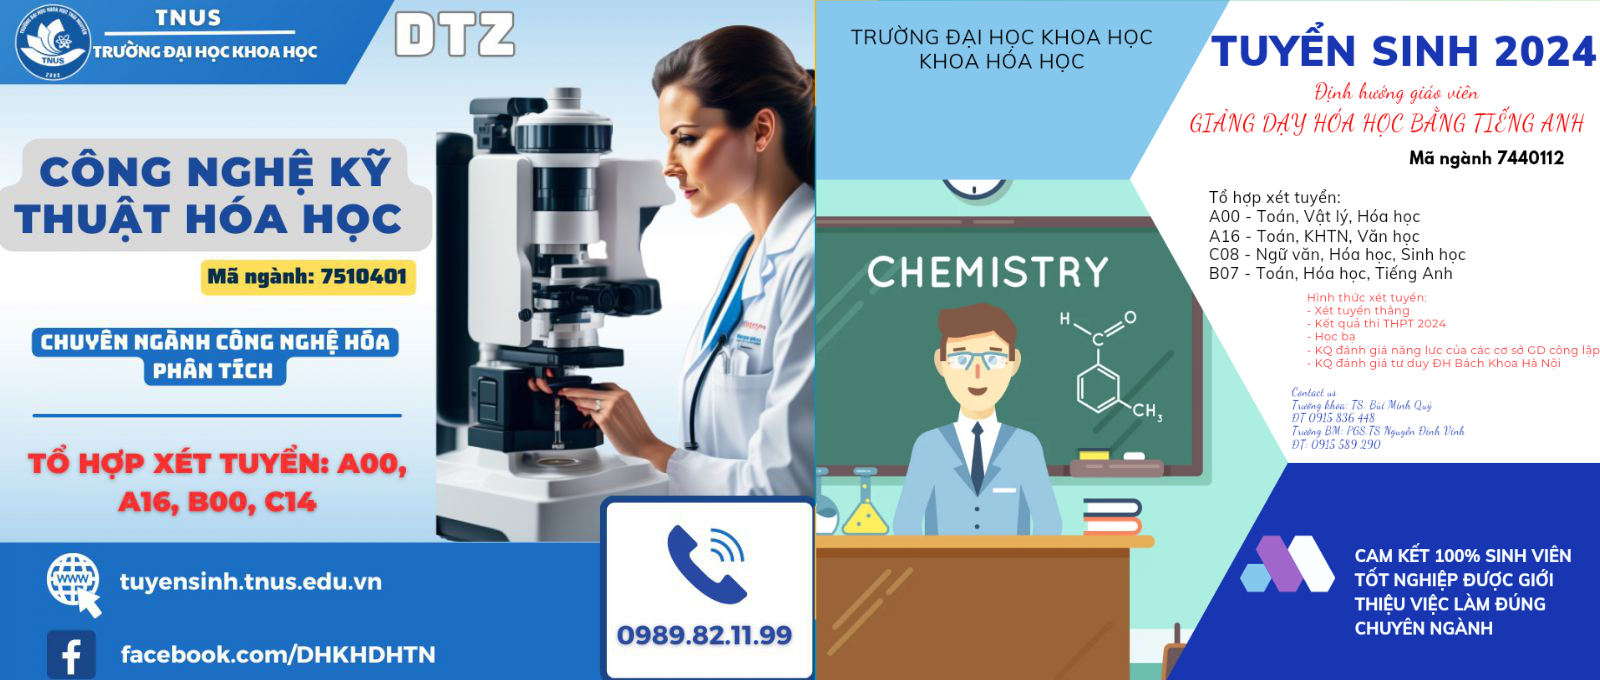 Thông tin tuyển sinh ngành Công nghệ kỹ thuật hóa học - Trường Đại học Khoa học - ĐH Thái Nguyên